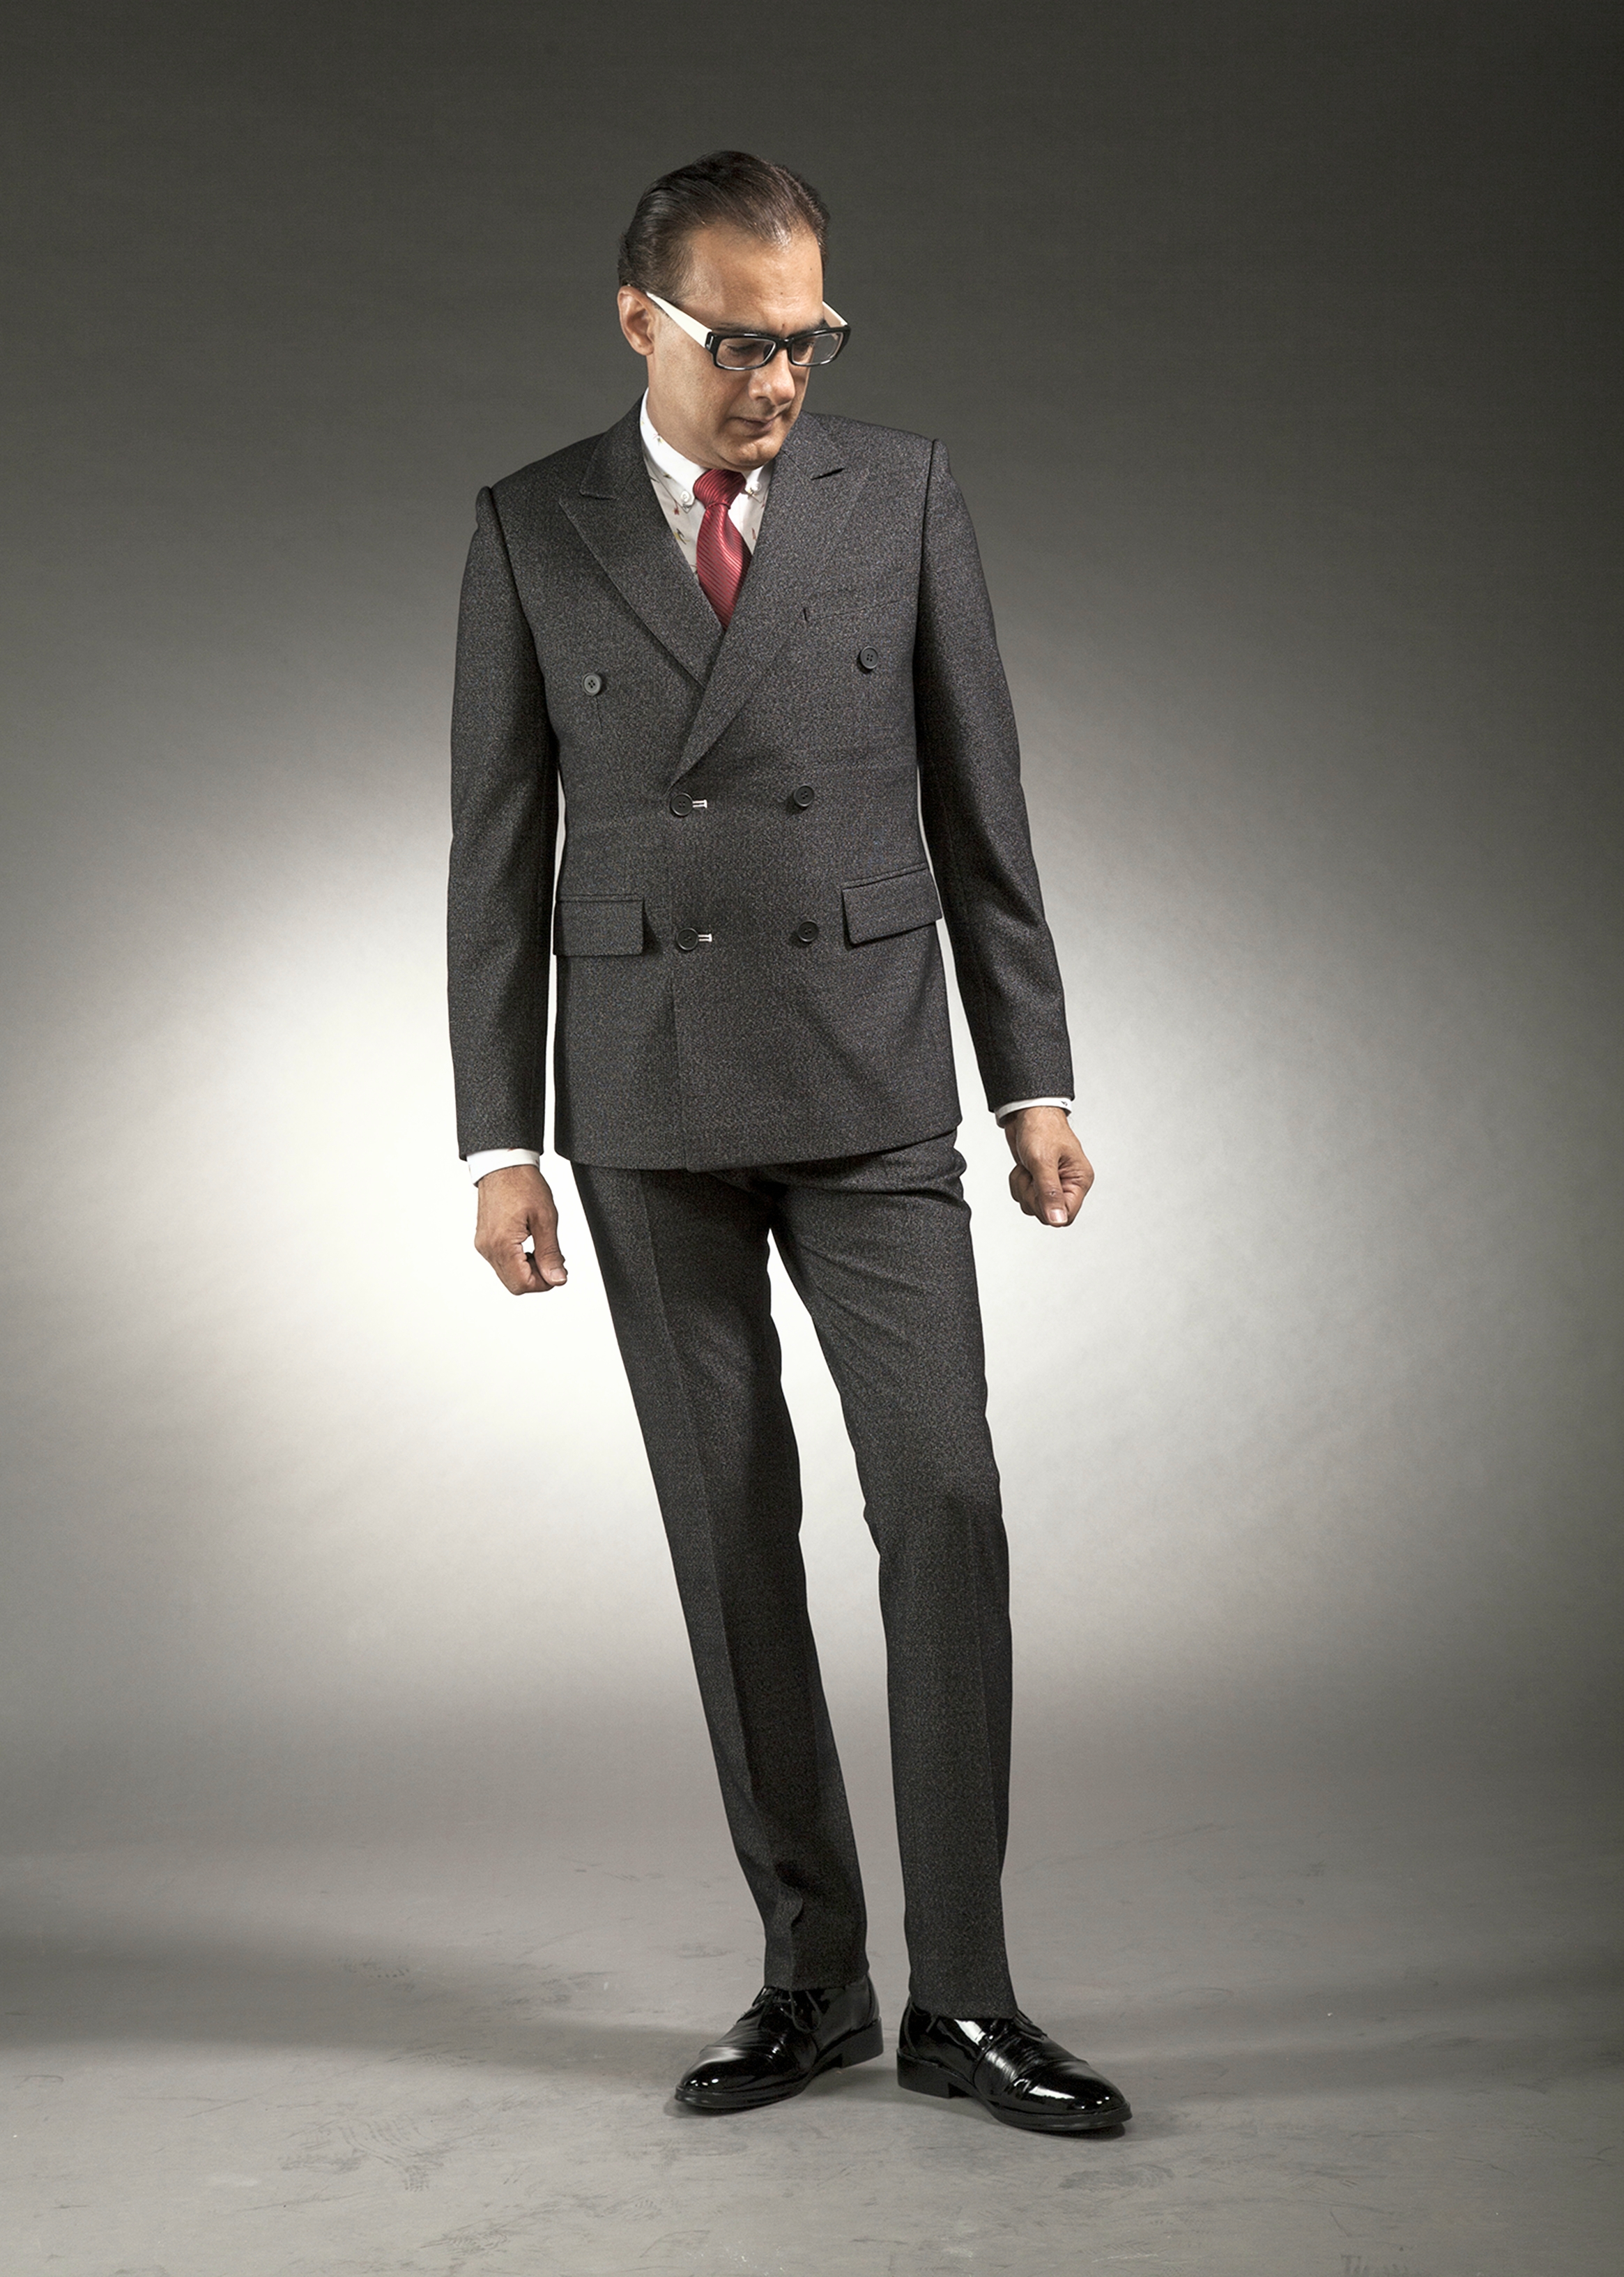 MST-5042-01-rent_rental_hire_tuxedo_suit_black_tie_suit_designer_suits_shop_tailor